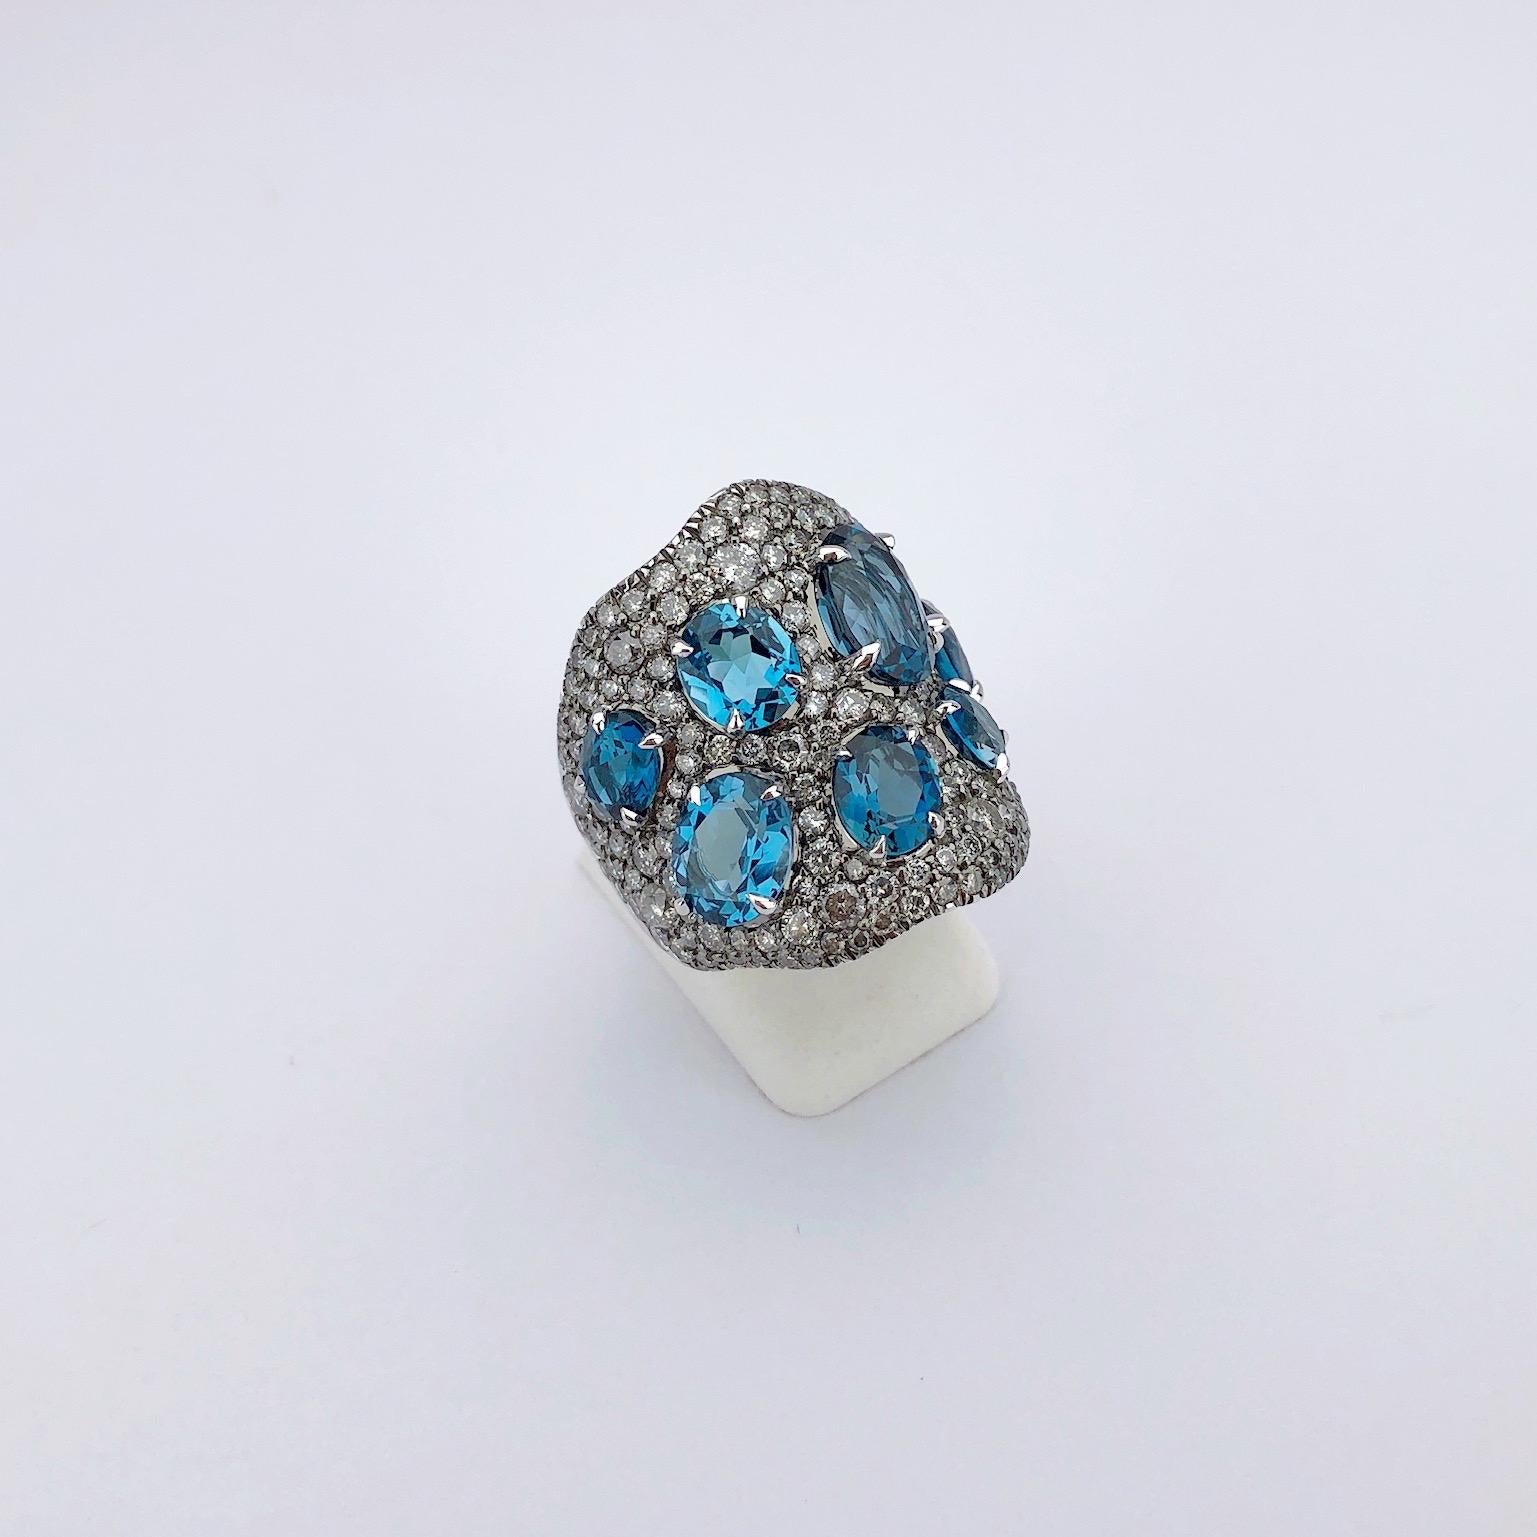 Cette large bague en or blanc 18 carats est sertie de diamants ronds brillants gris argentés. Des topazes bleues ovales sont serties avec les diamants pour un magnifique contraste. L'anneau mesure environ 1